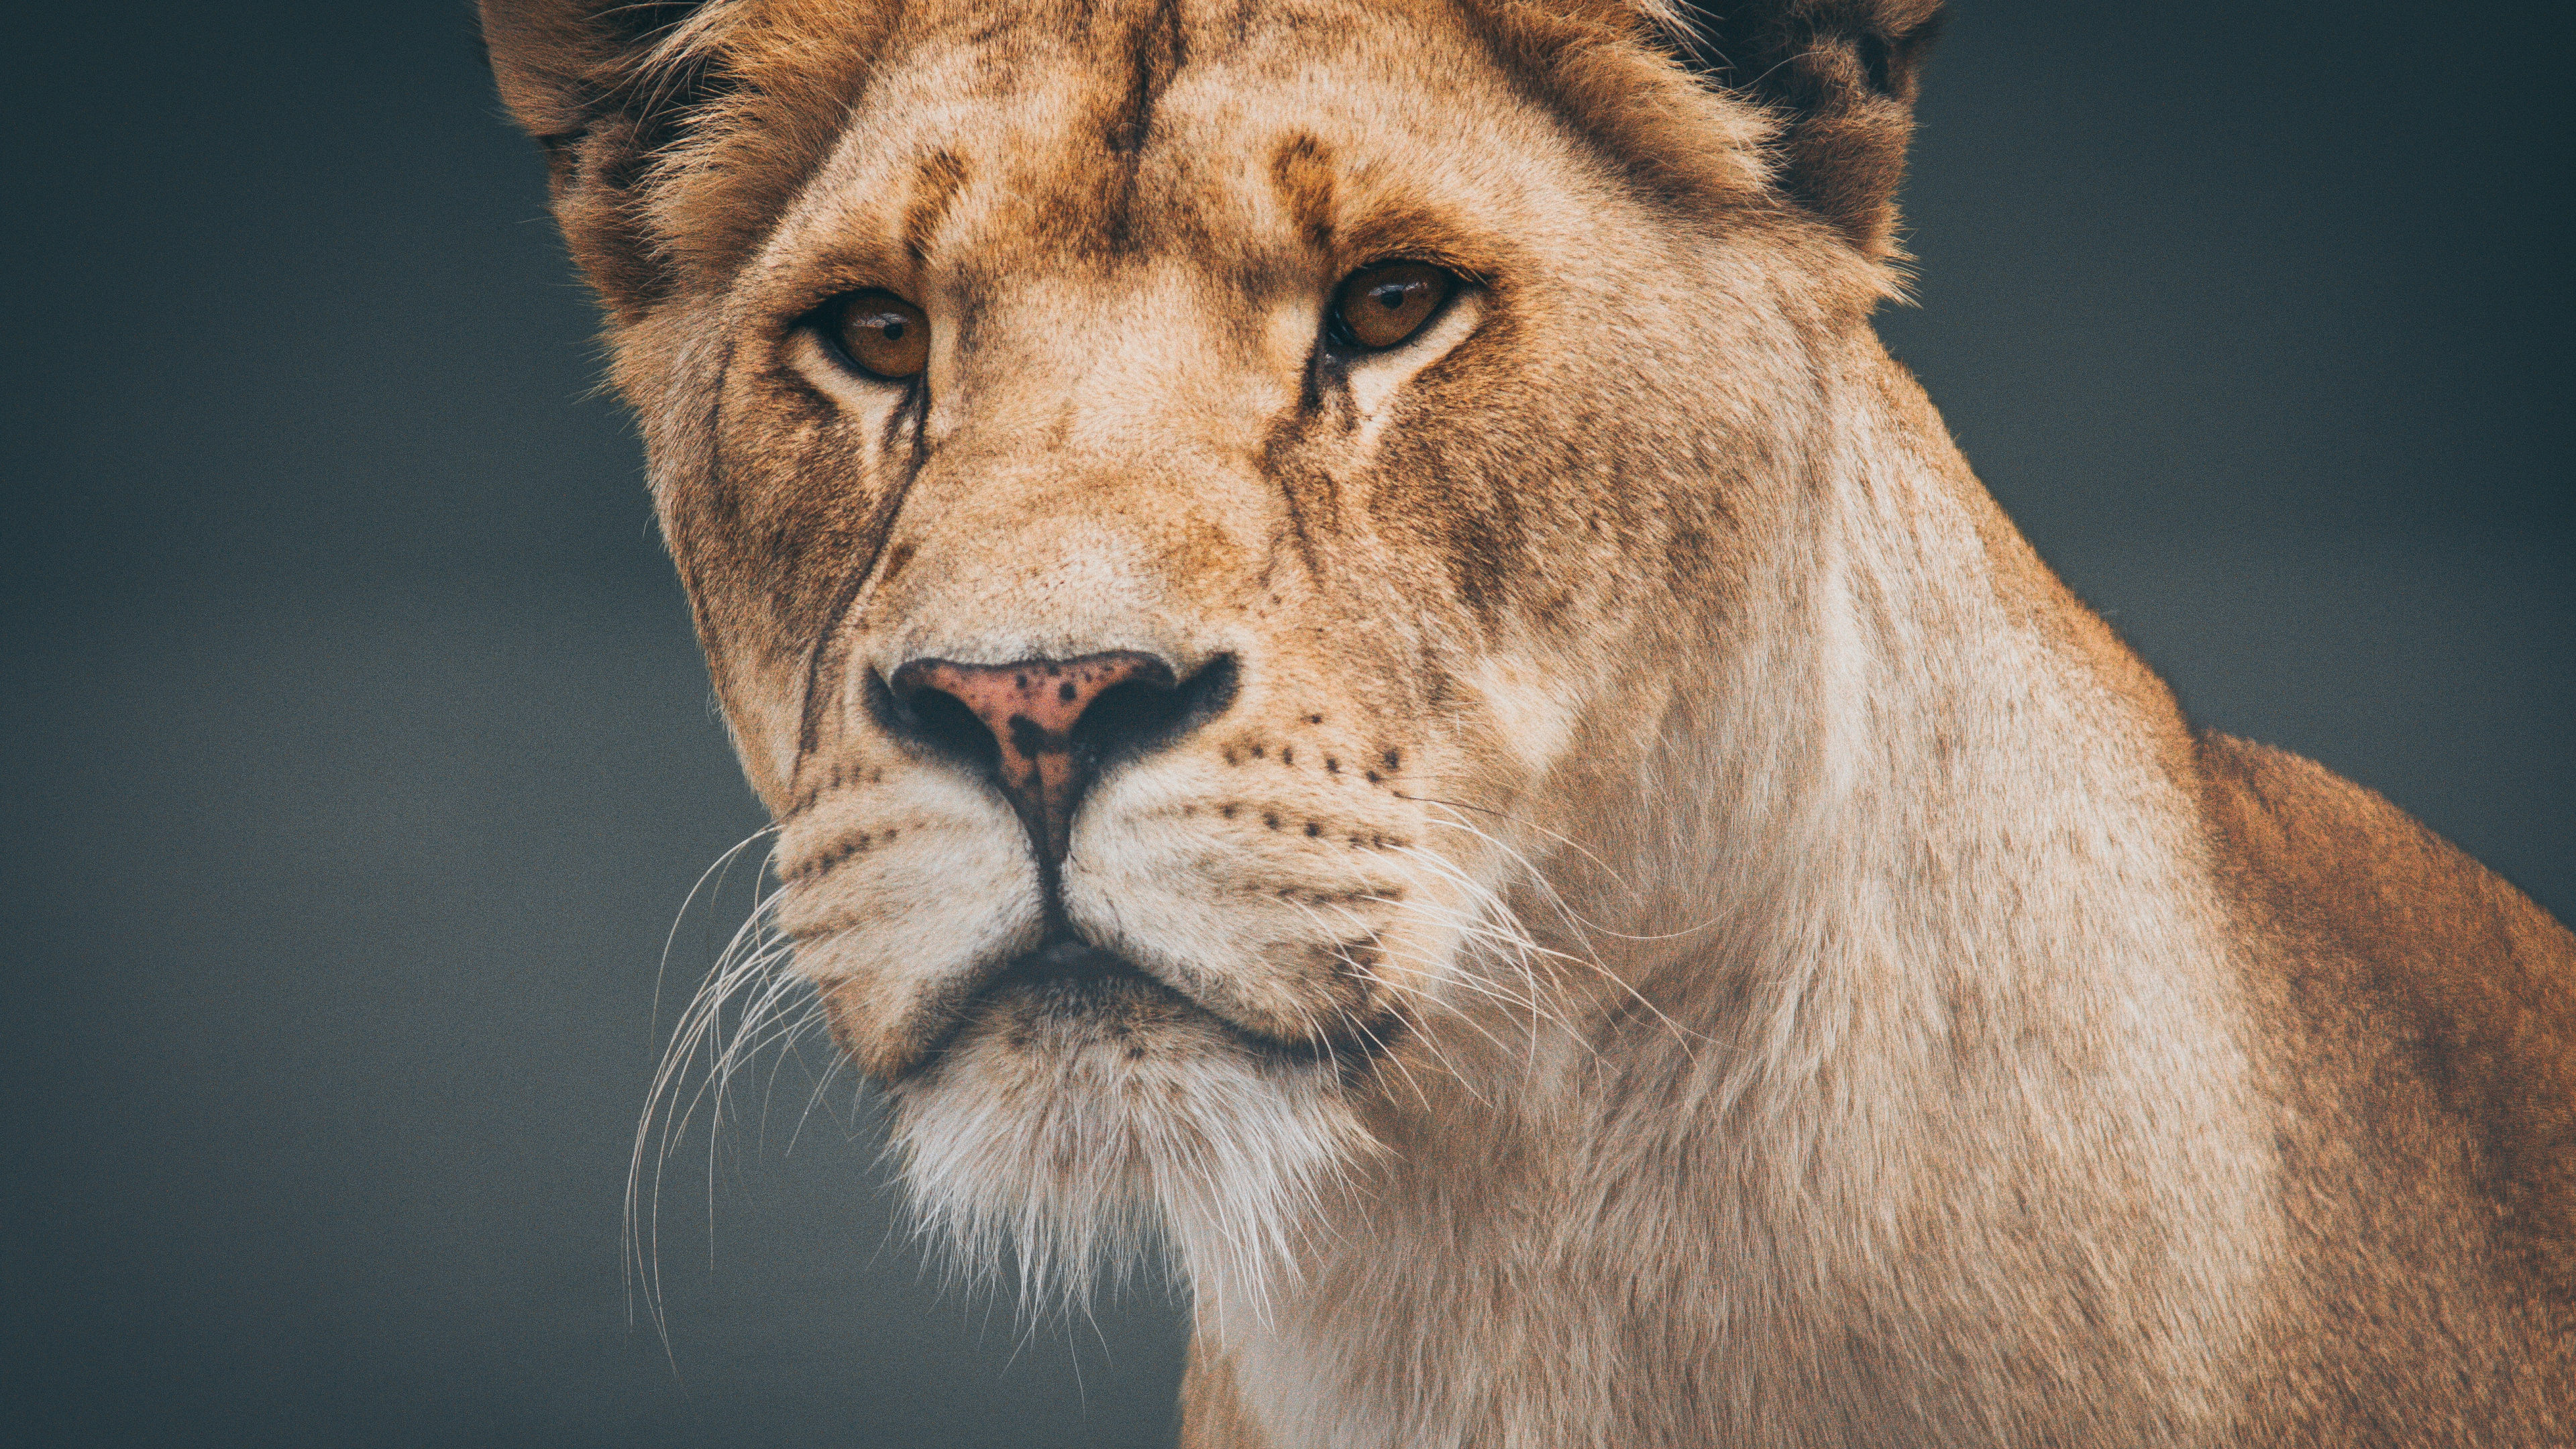 狮子, 野生动物, 陆地动物, 头发, 猫科 壁纸 3840x2160 允许